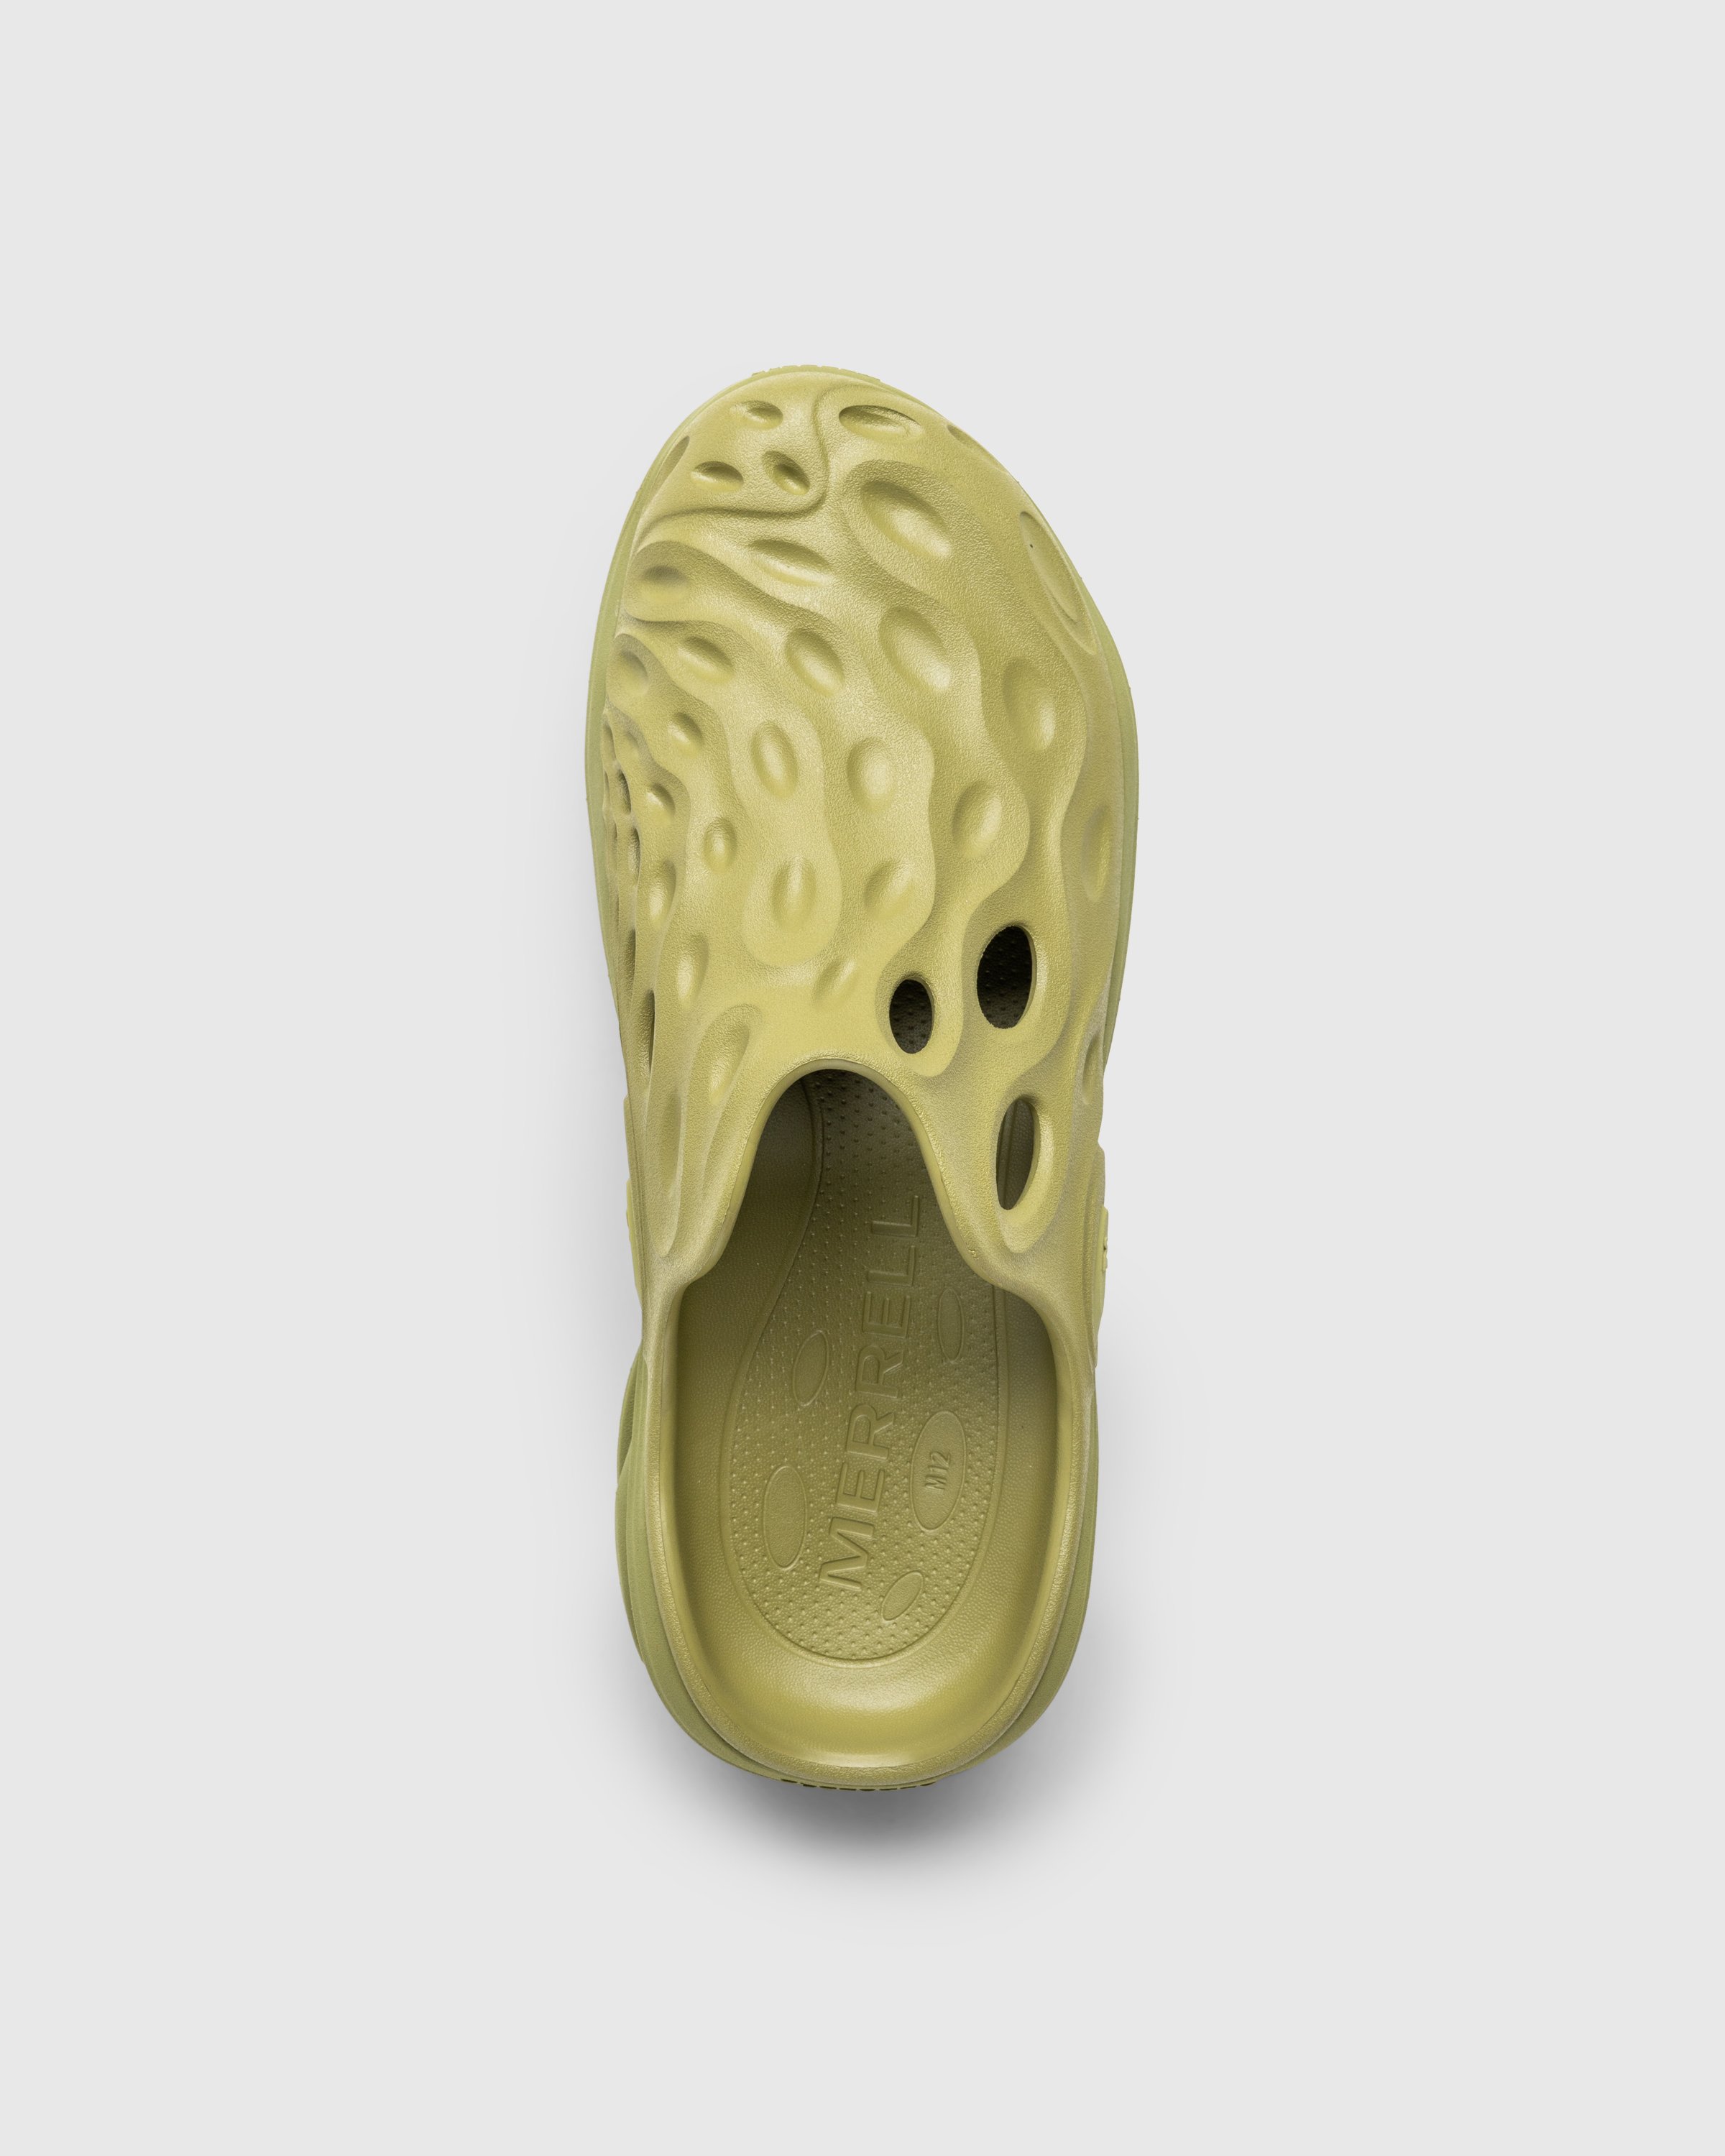 Merrell - HYDRO NEXT GEN MULE SE/TRIPLE MOSSTONE - Footwear - Green - Image 5